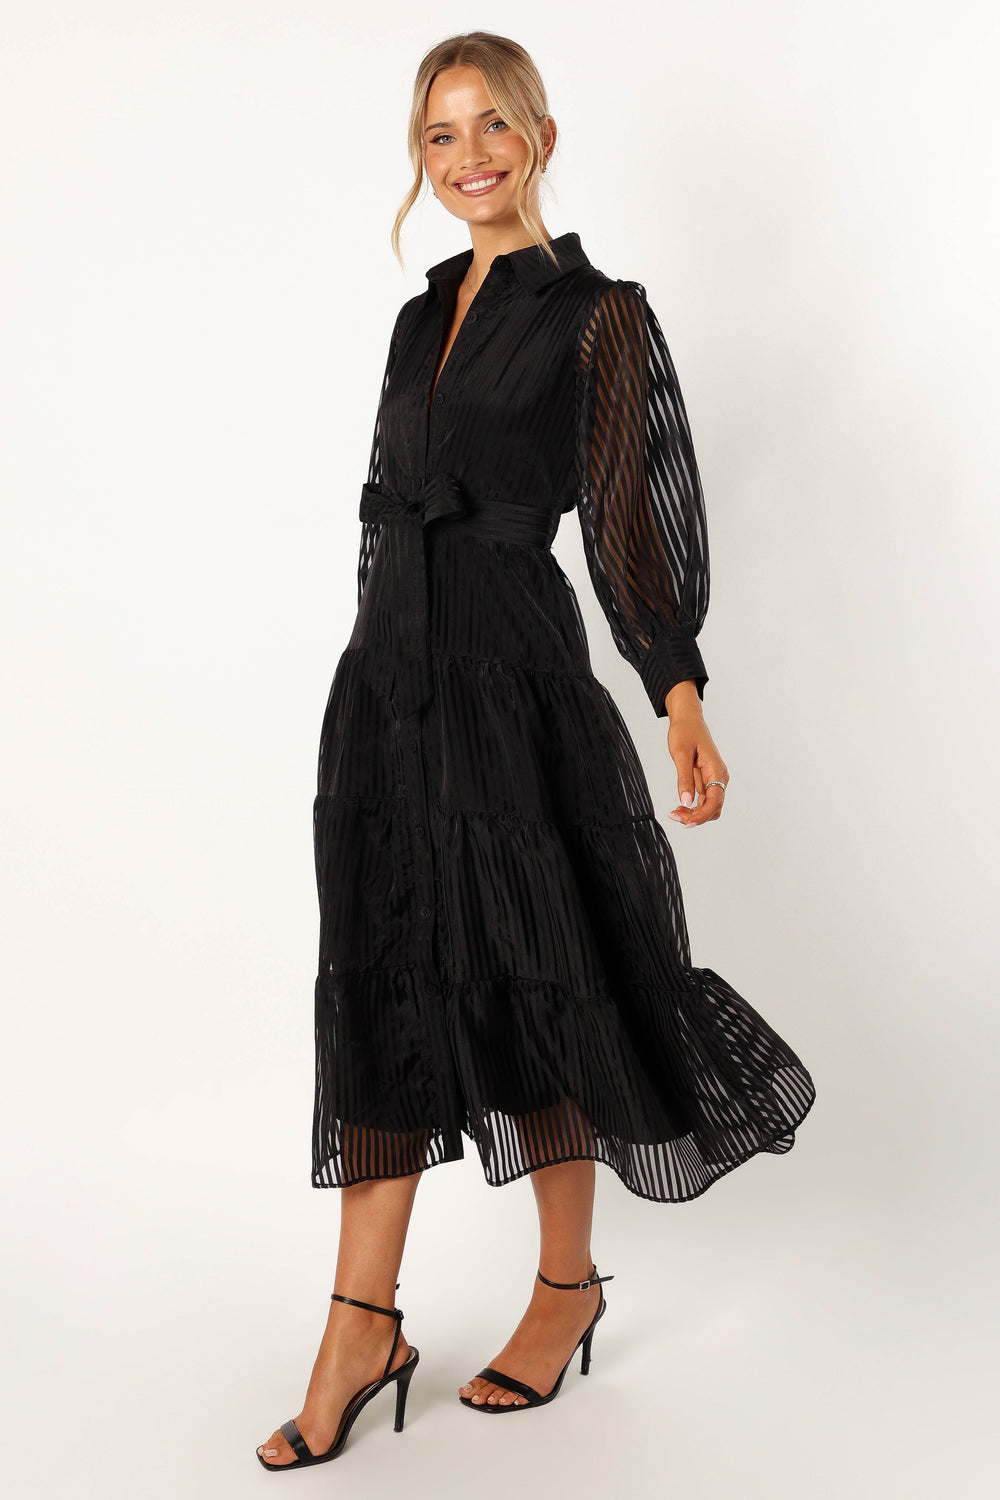 Neve Long Sleeve Maxi Dress - Black - Petal & Pup USA